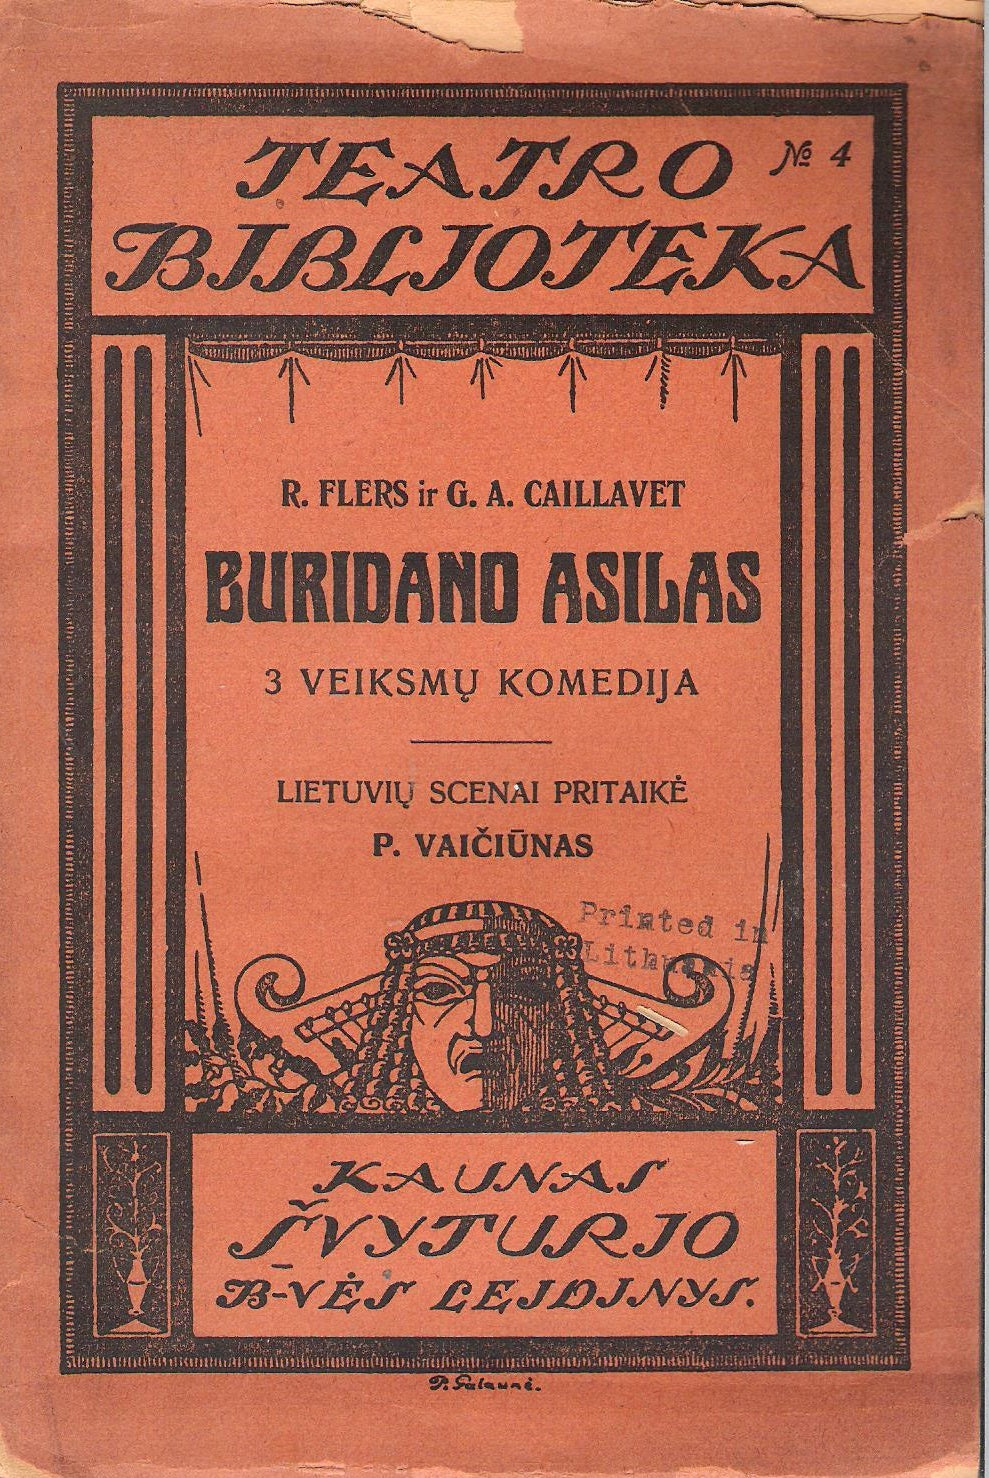 R. Flers ir G.A. Caillavet - Buridano asilas: 3 veiksmų komedija, 1923 m., Kaunas